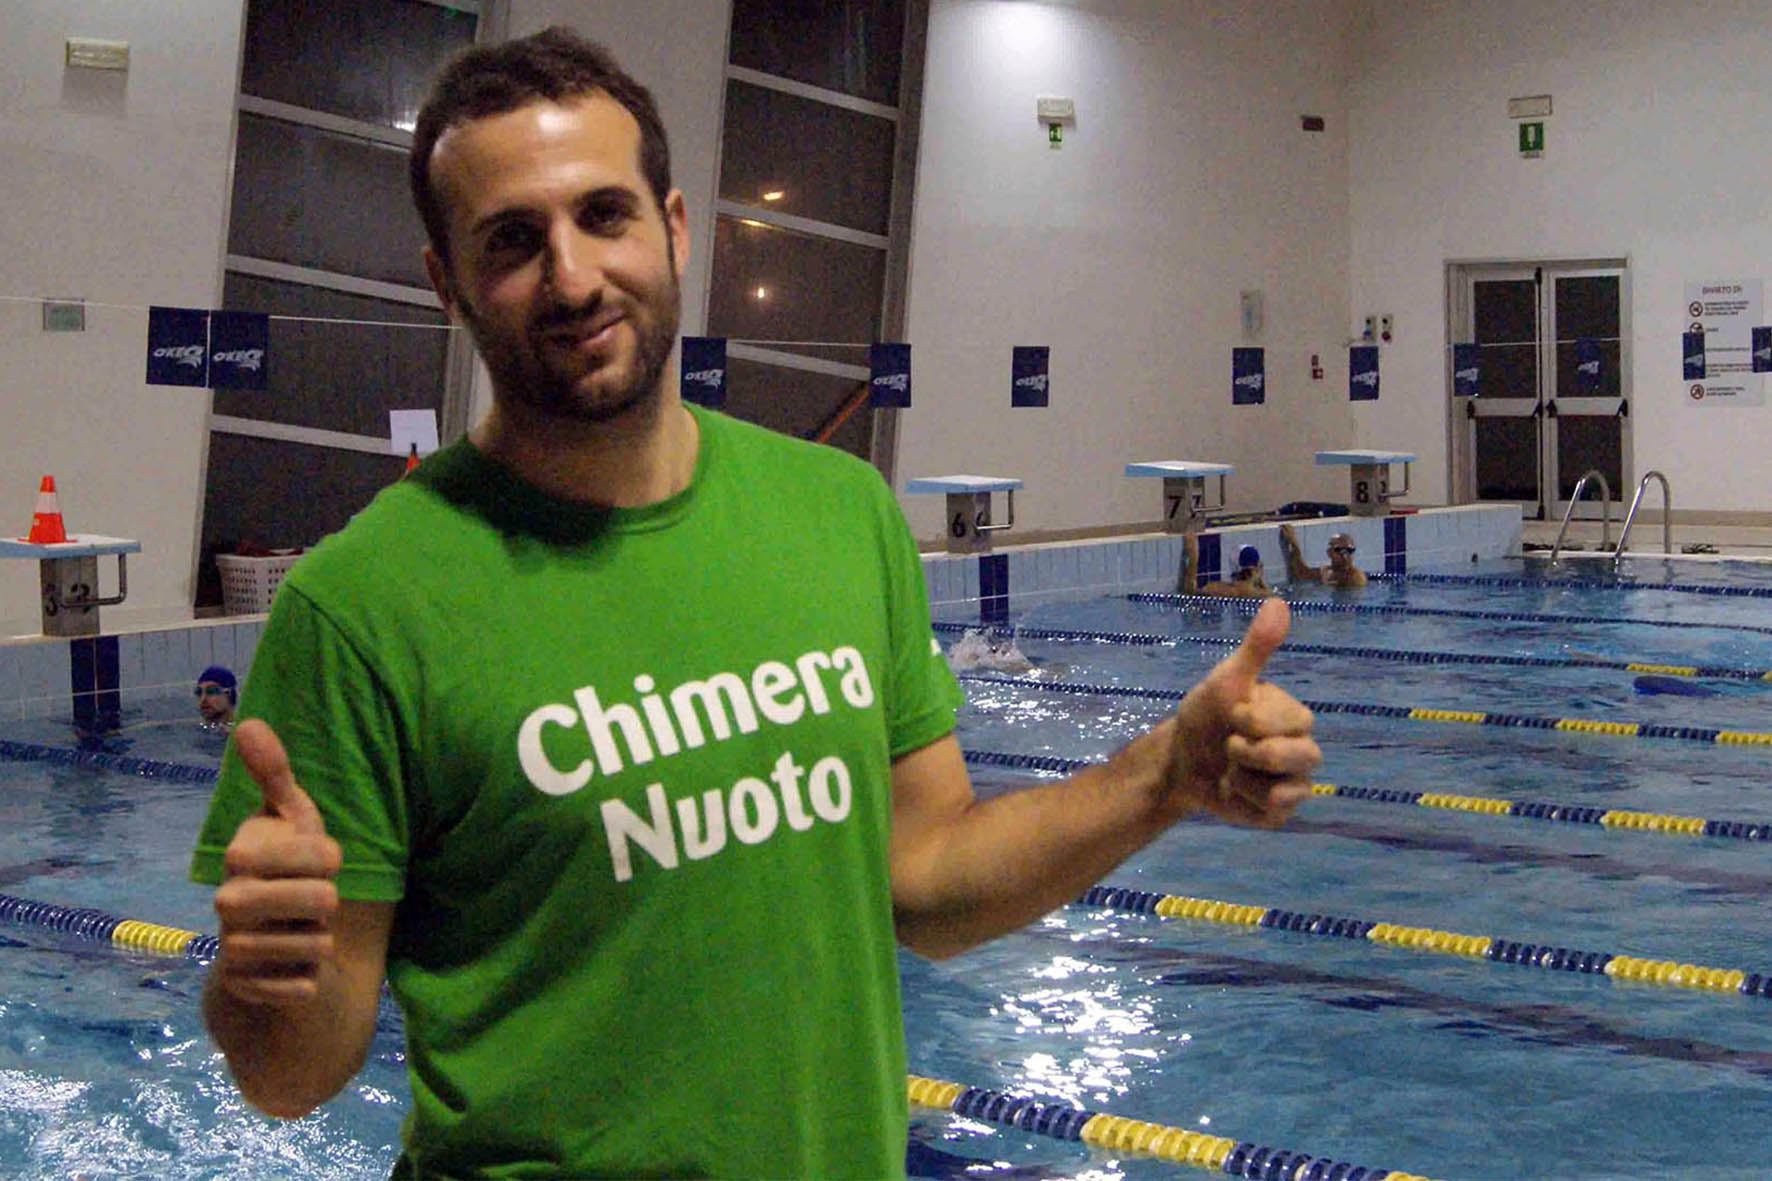 Nuoto e primo soccorso: nuovo percorso formativo per la Chimera Nuoto